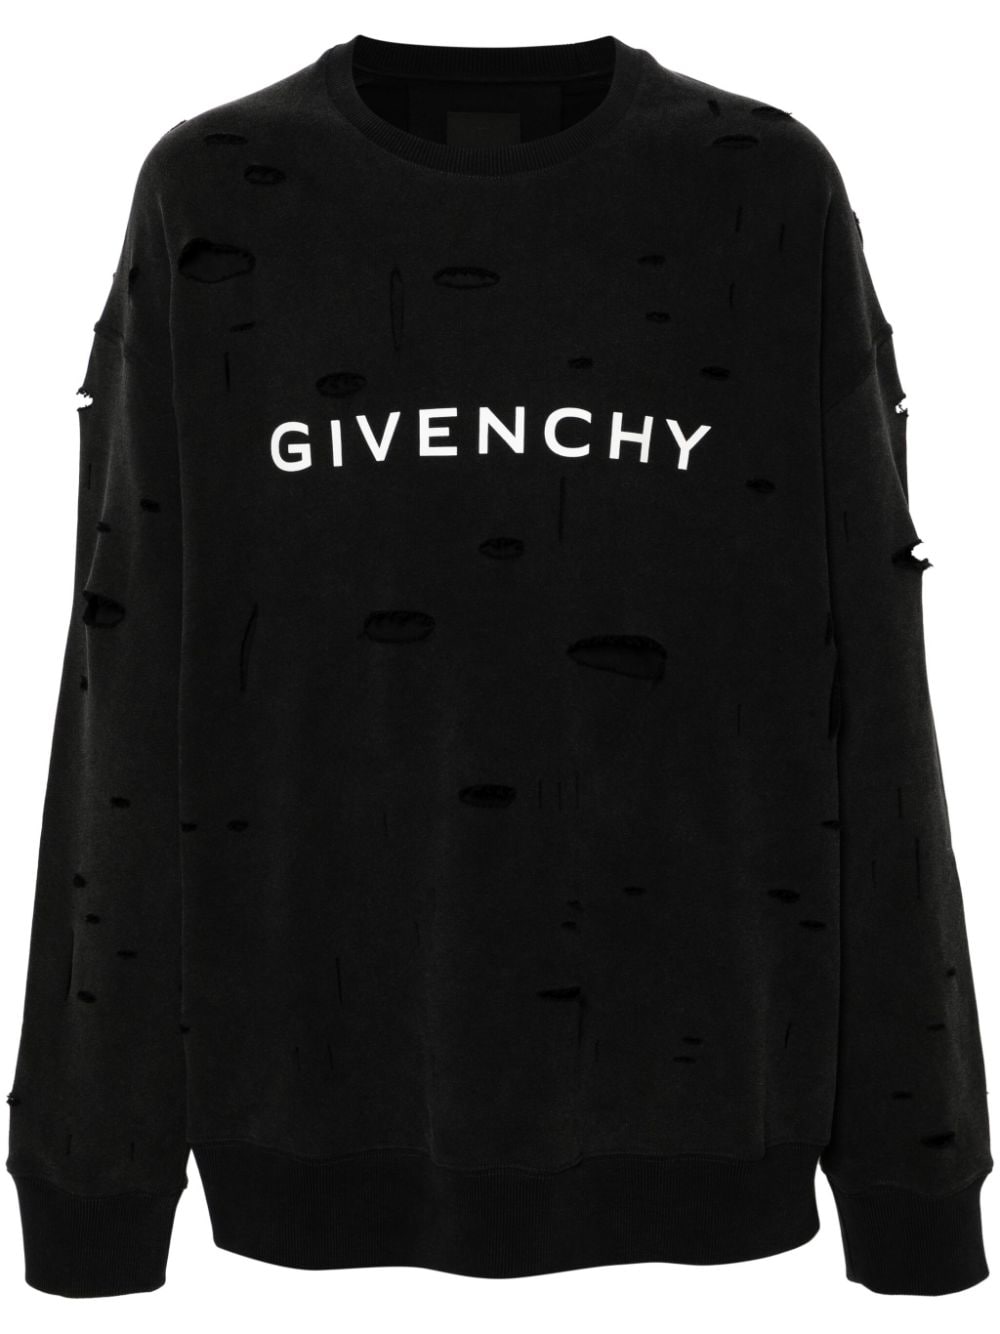 Givenchy Archetype Sweatshirt im Distressed-Look - Schwarz von Givenchy